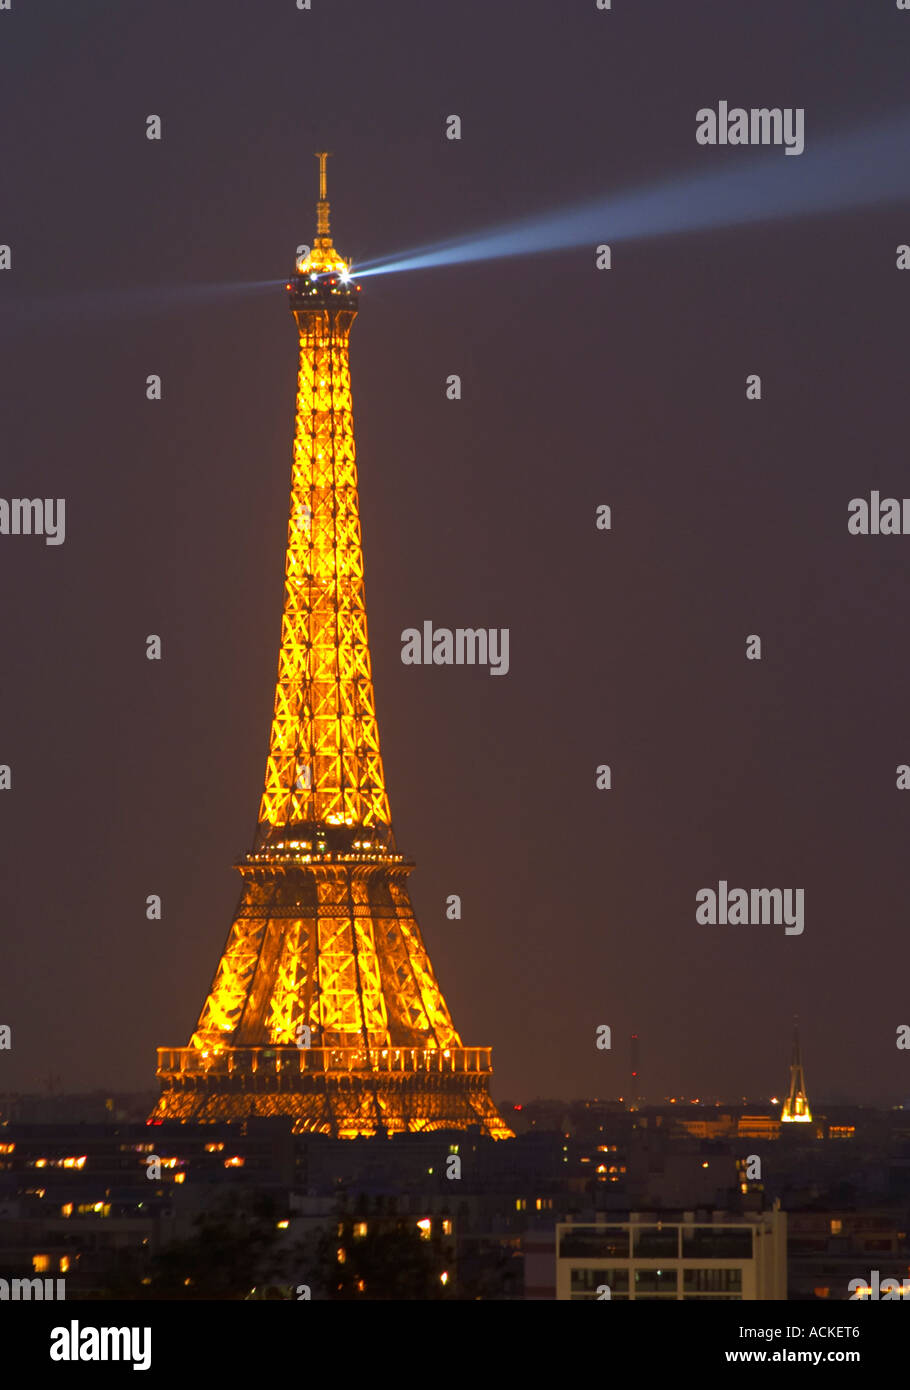 La Torre Eiffel A Parigi Illuminata Di Notte Contro Un Blu Scuro Nero Sky Cerca Il Raggio Di Luce Del Cielo Illuminazione Di Colore Giallo Dorato Parigi Francia Foto Stock Alamy